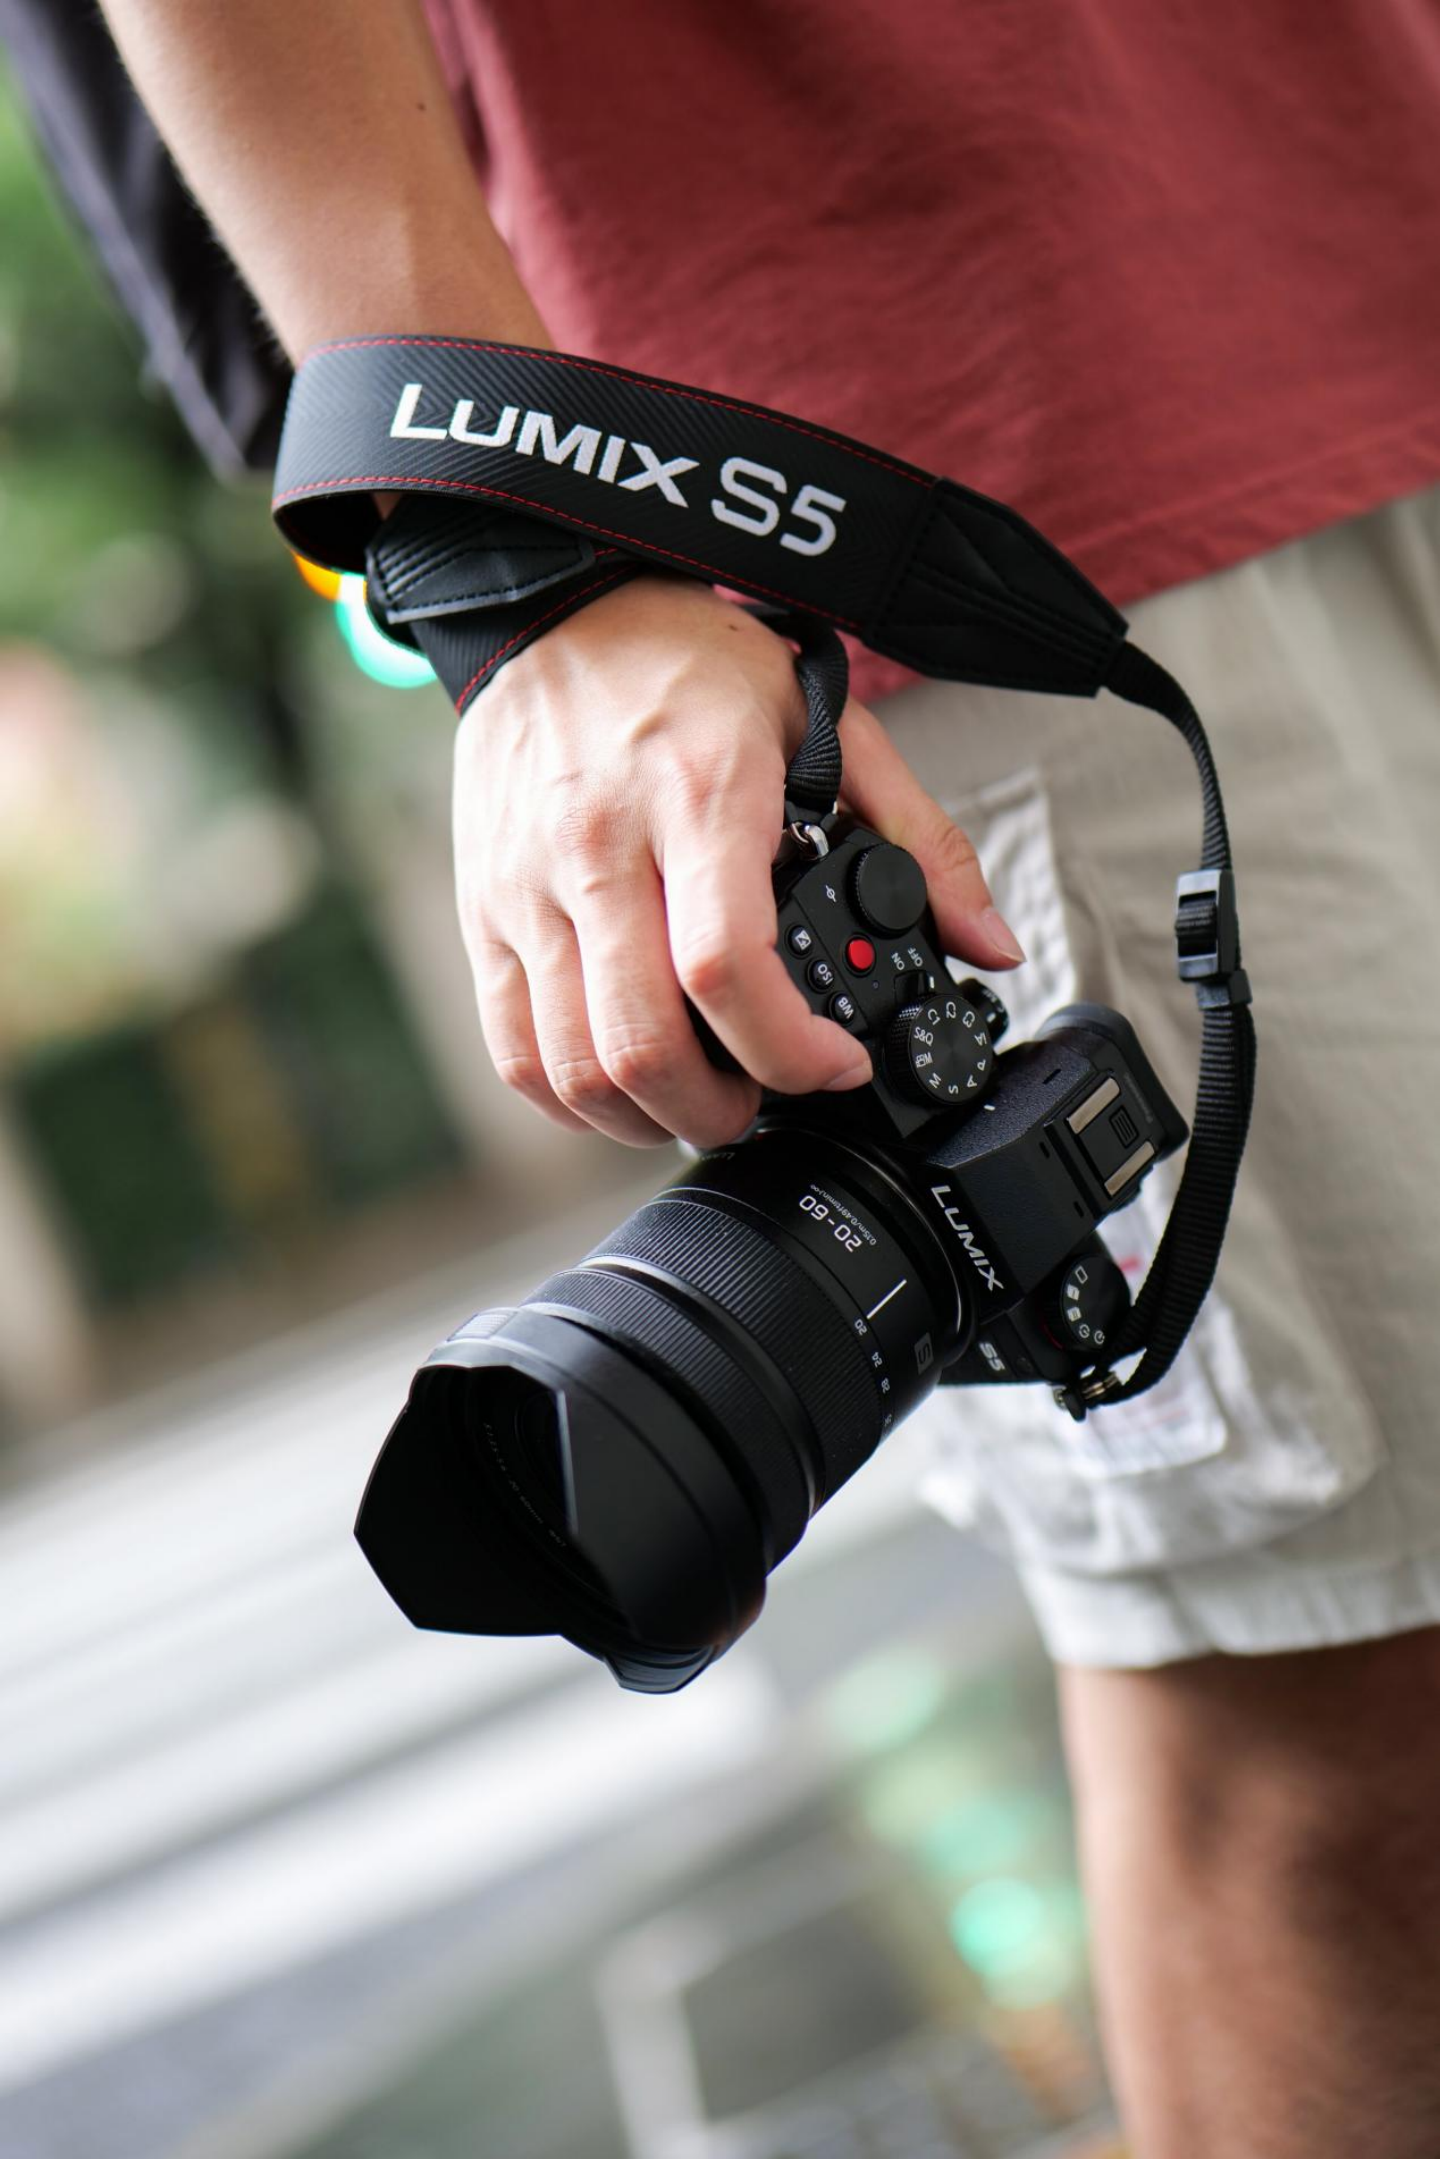 「进可攻退可守」的色彩表现 松下LUMIX S5拍照实测